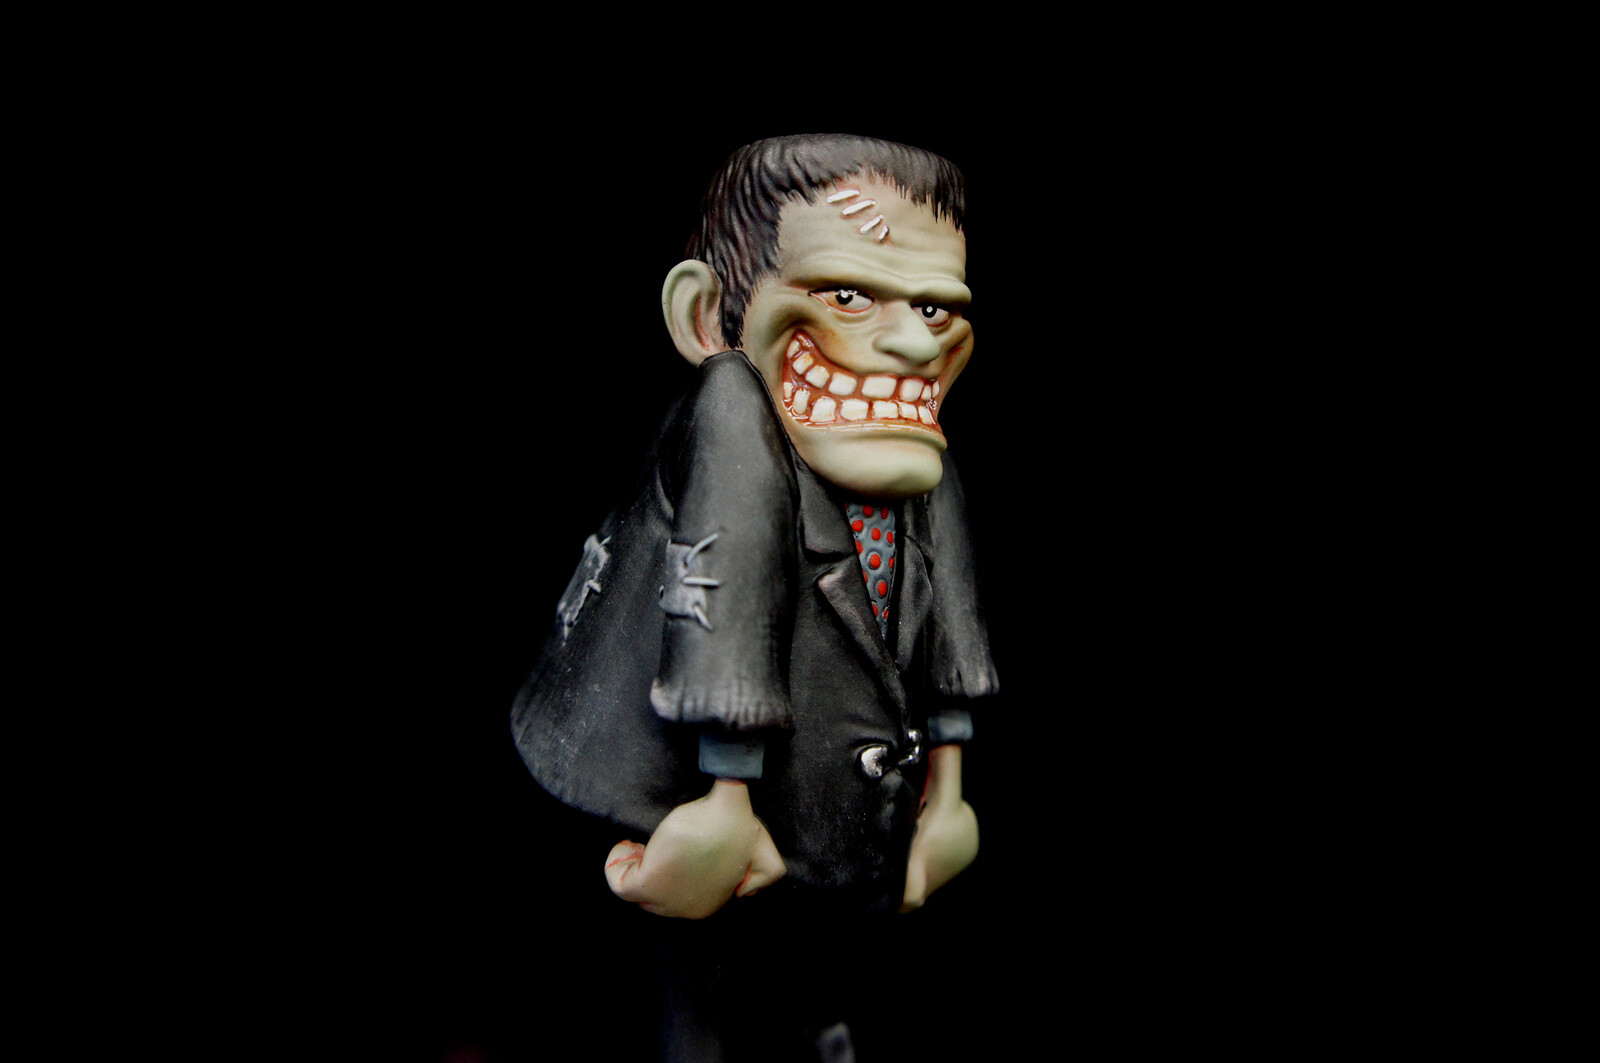 Animated Frankenstein Art Statue 
https://www.solidart.club/